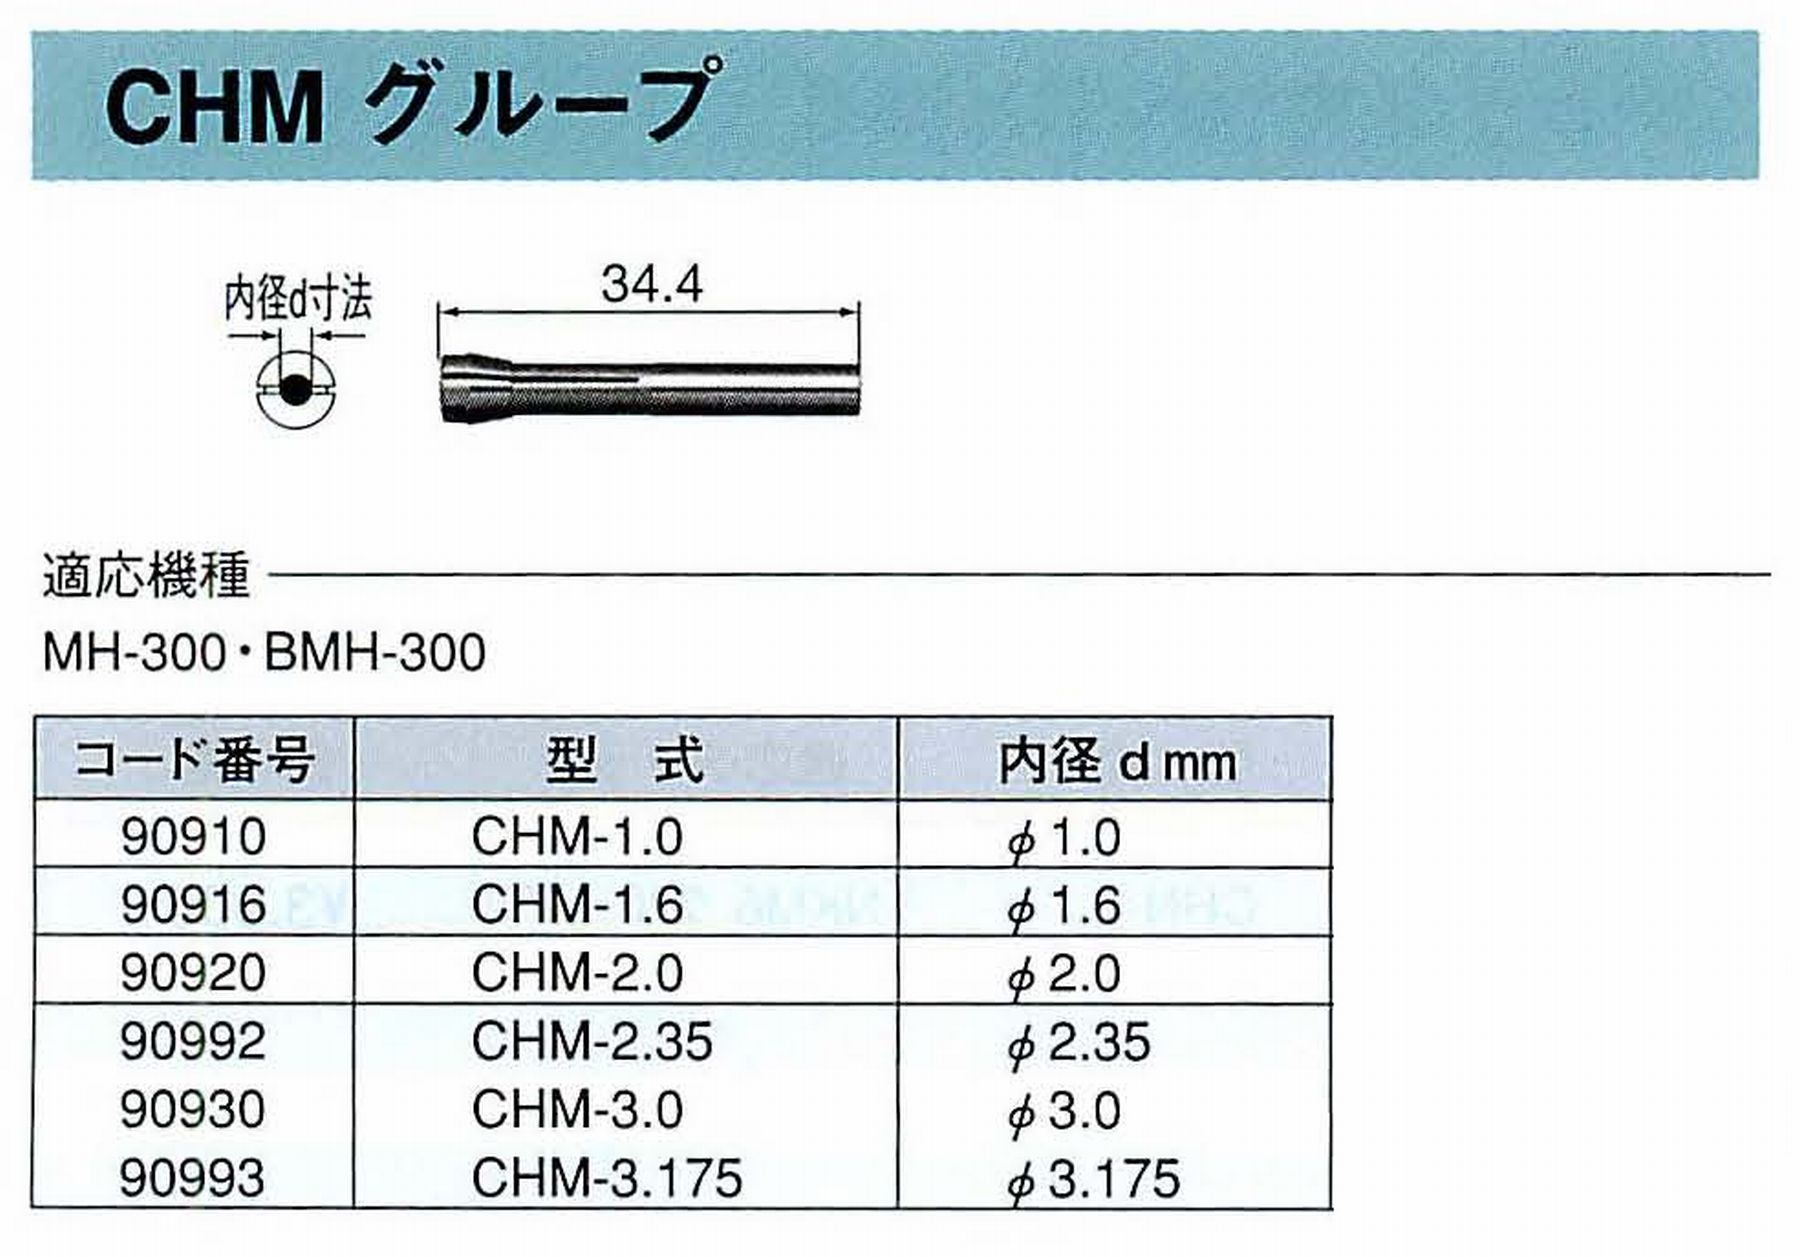 ナカニシ/NAKANISHI コレットチャック コード番号 90993 型式 CHM-3.175 内径:Φ3.175